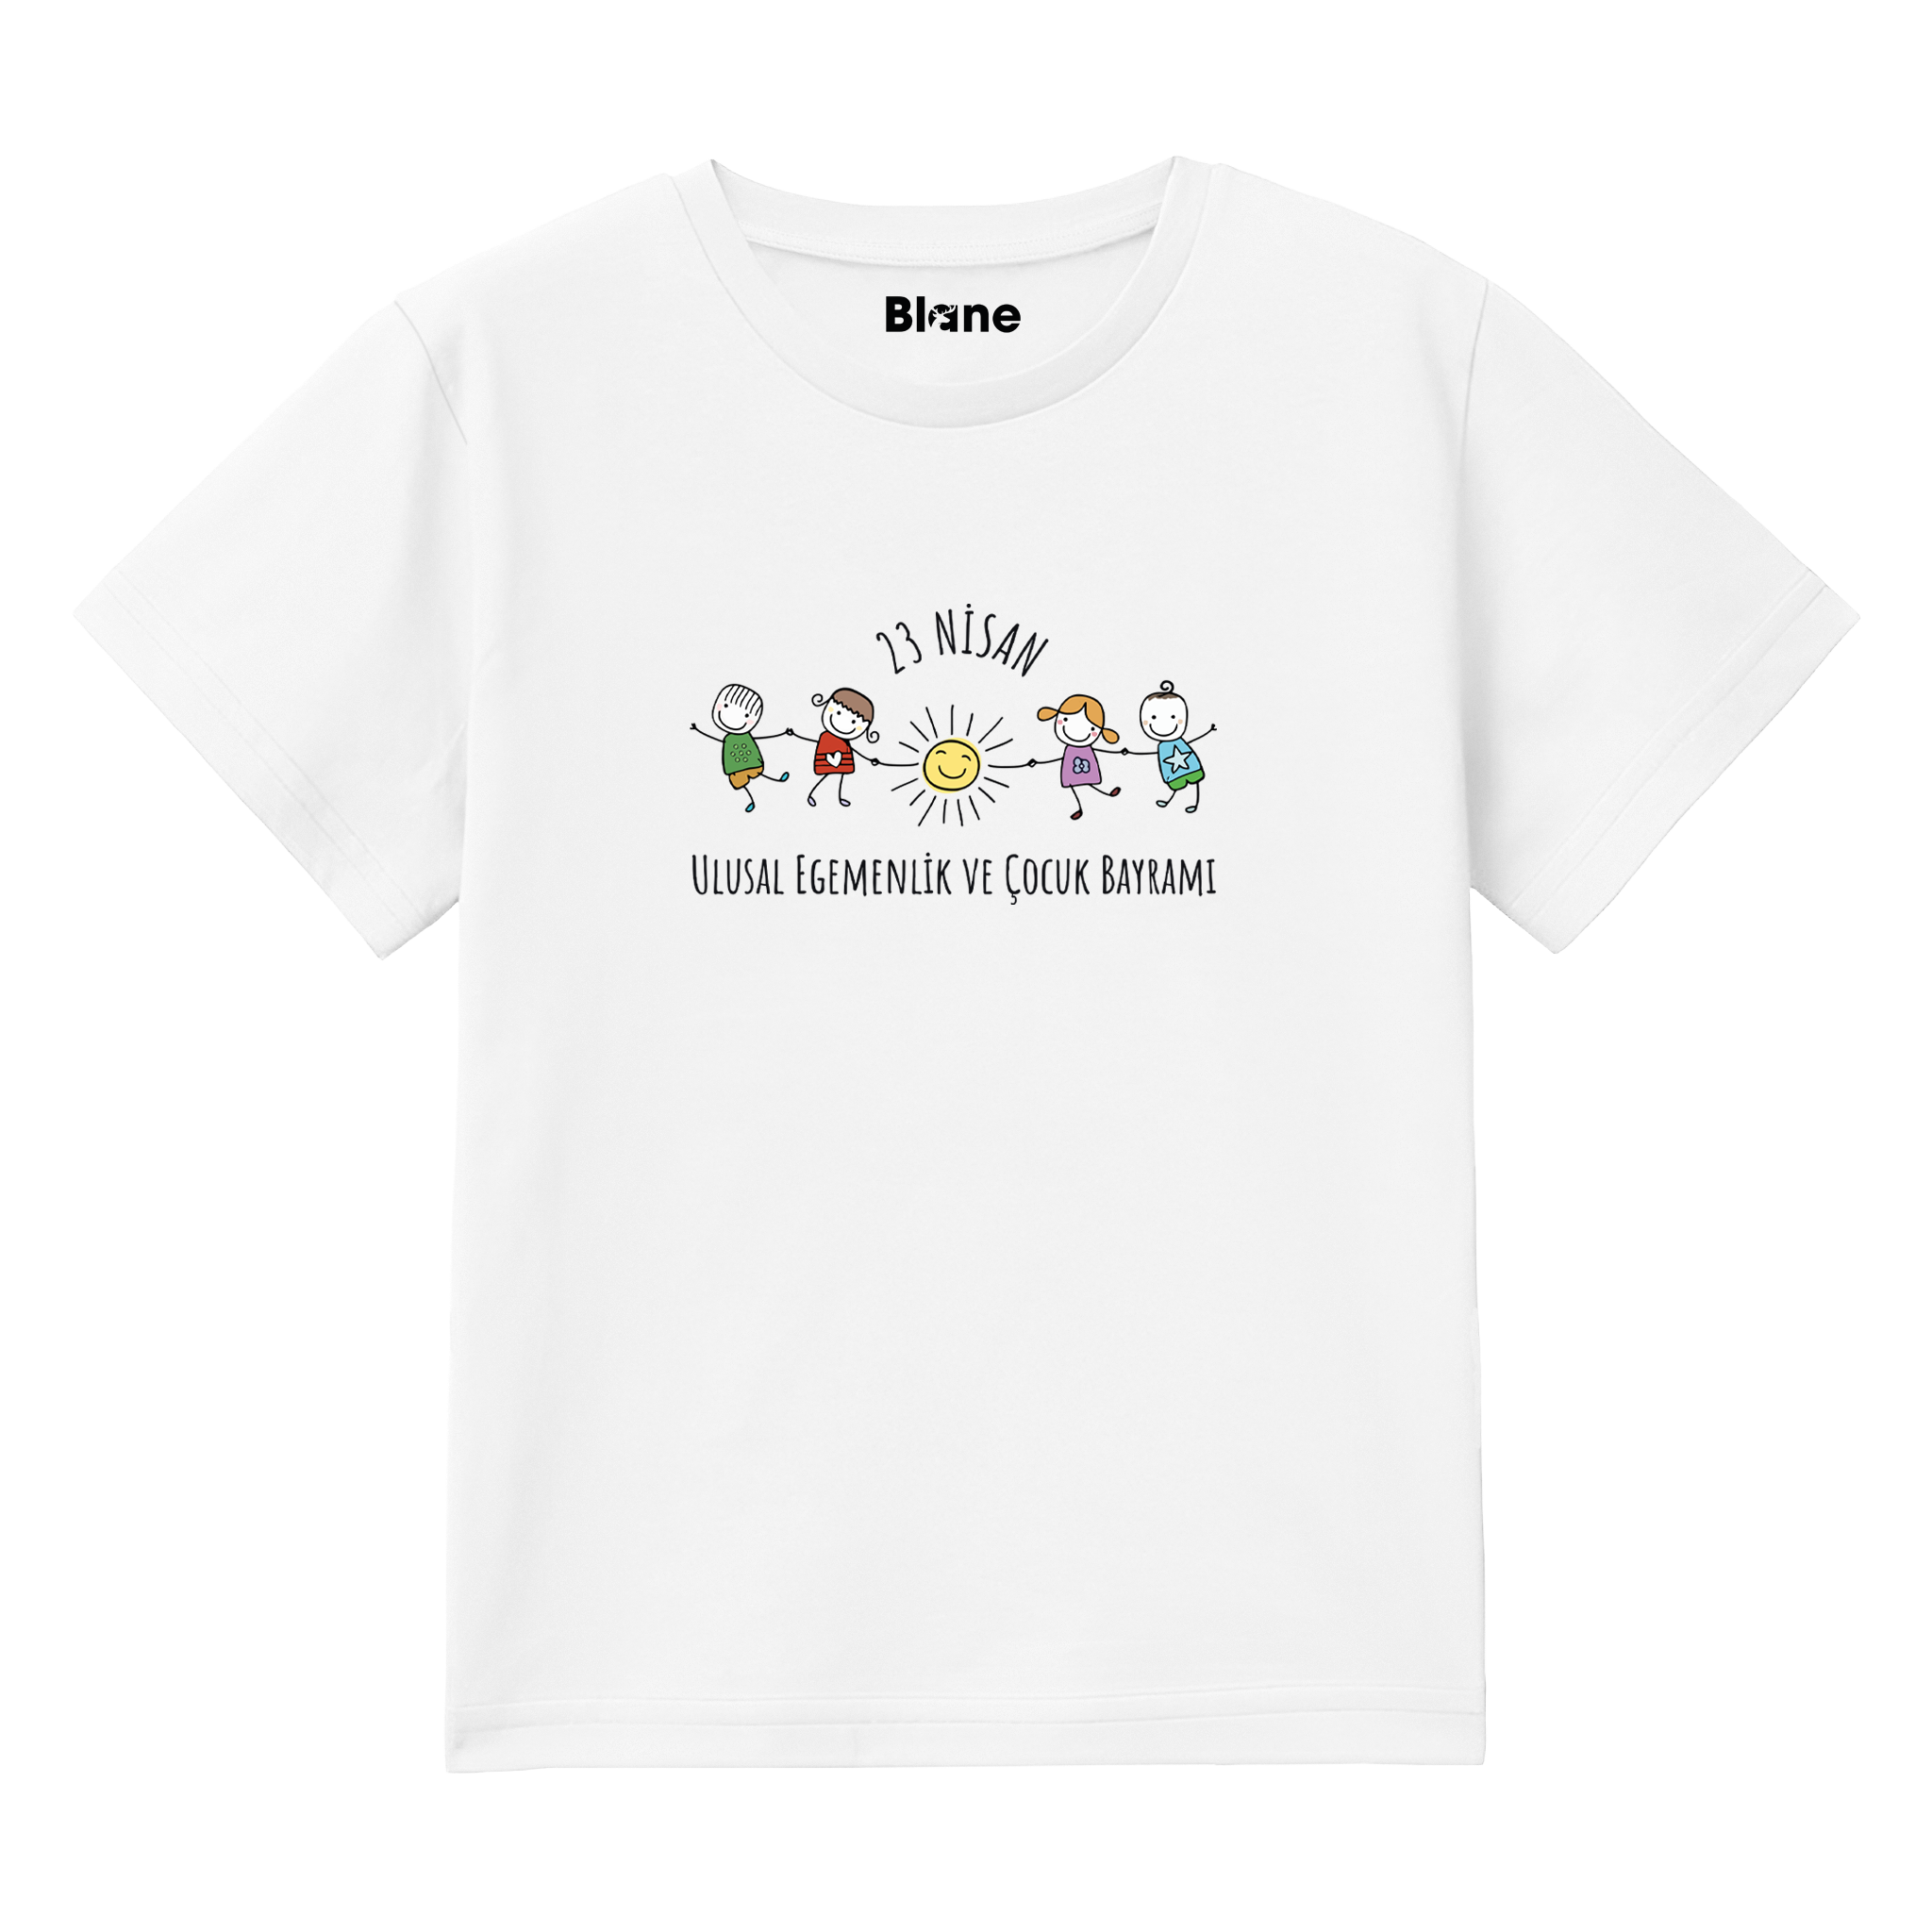 Çocuk Bayramı - Çocuk T-Shirt